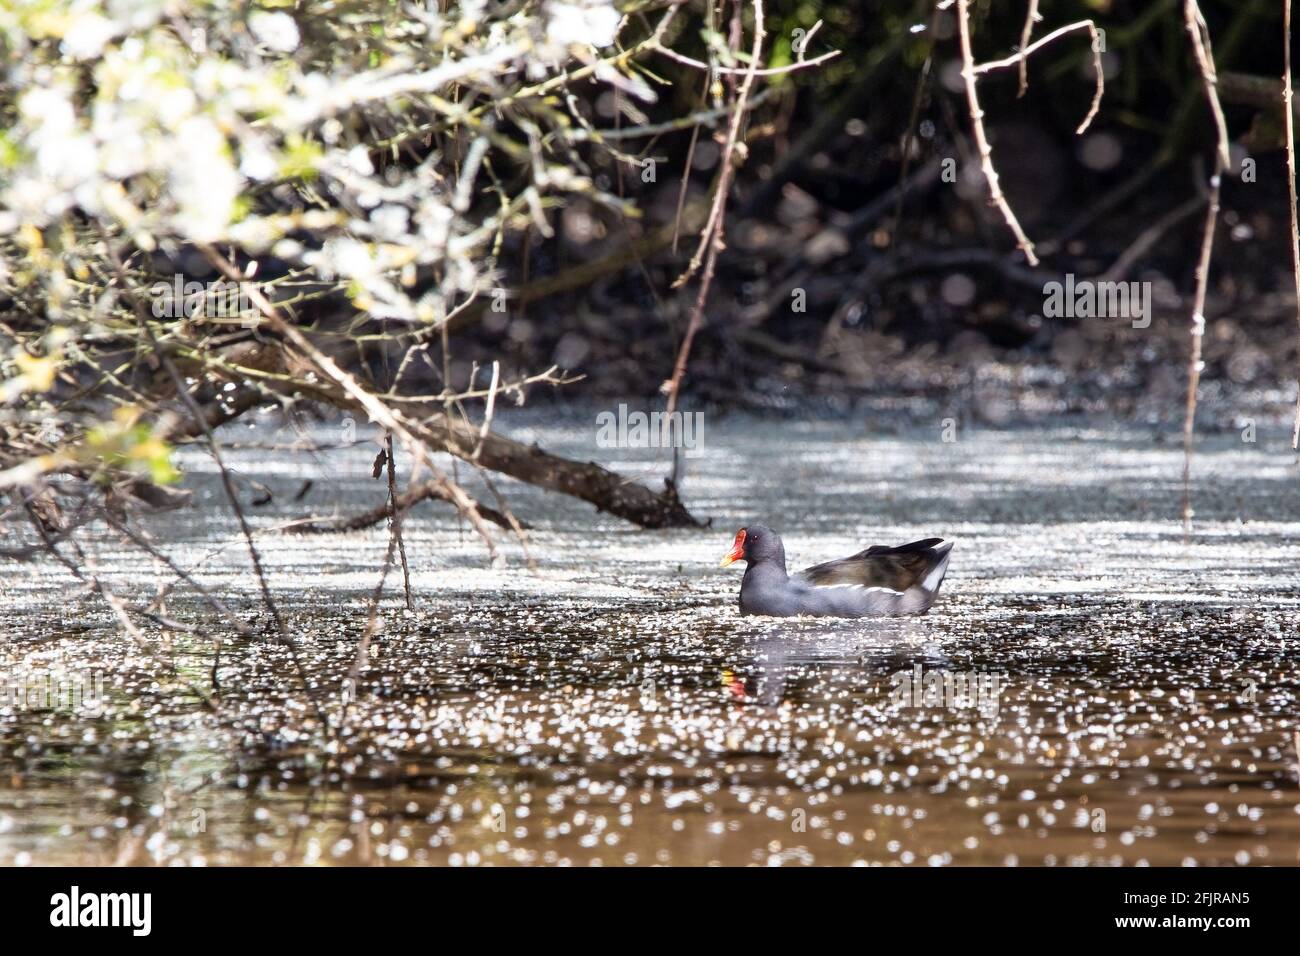 Un moorhen nadando en un río rodeado de flores que ha caído de los árboles circundantes Foto de stock